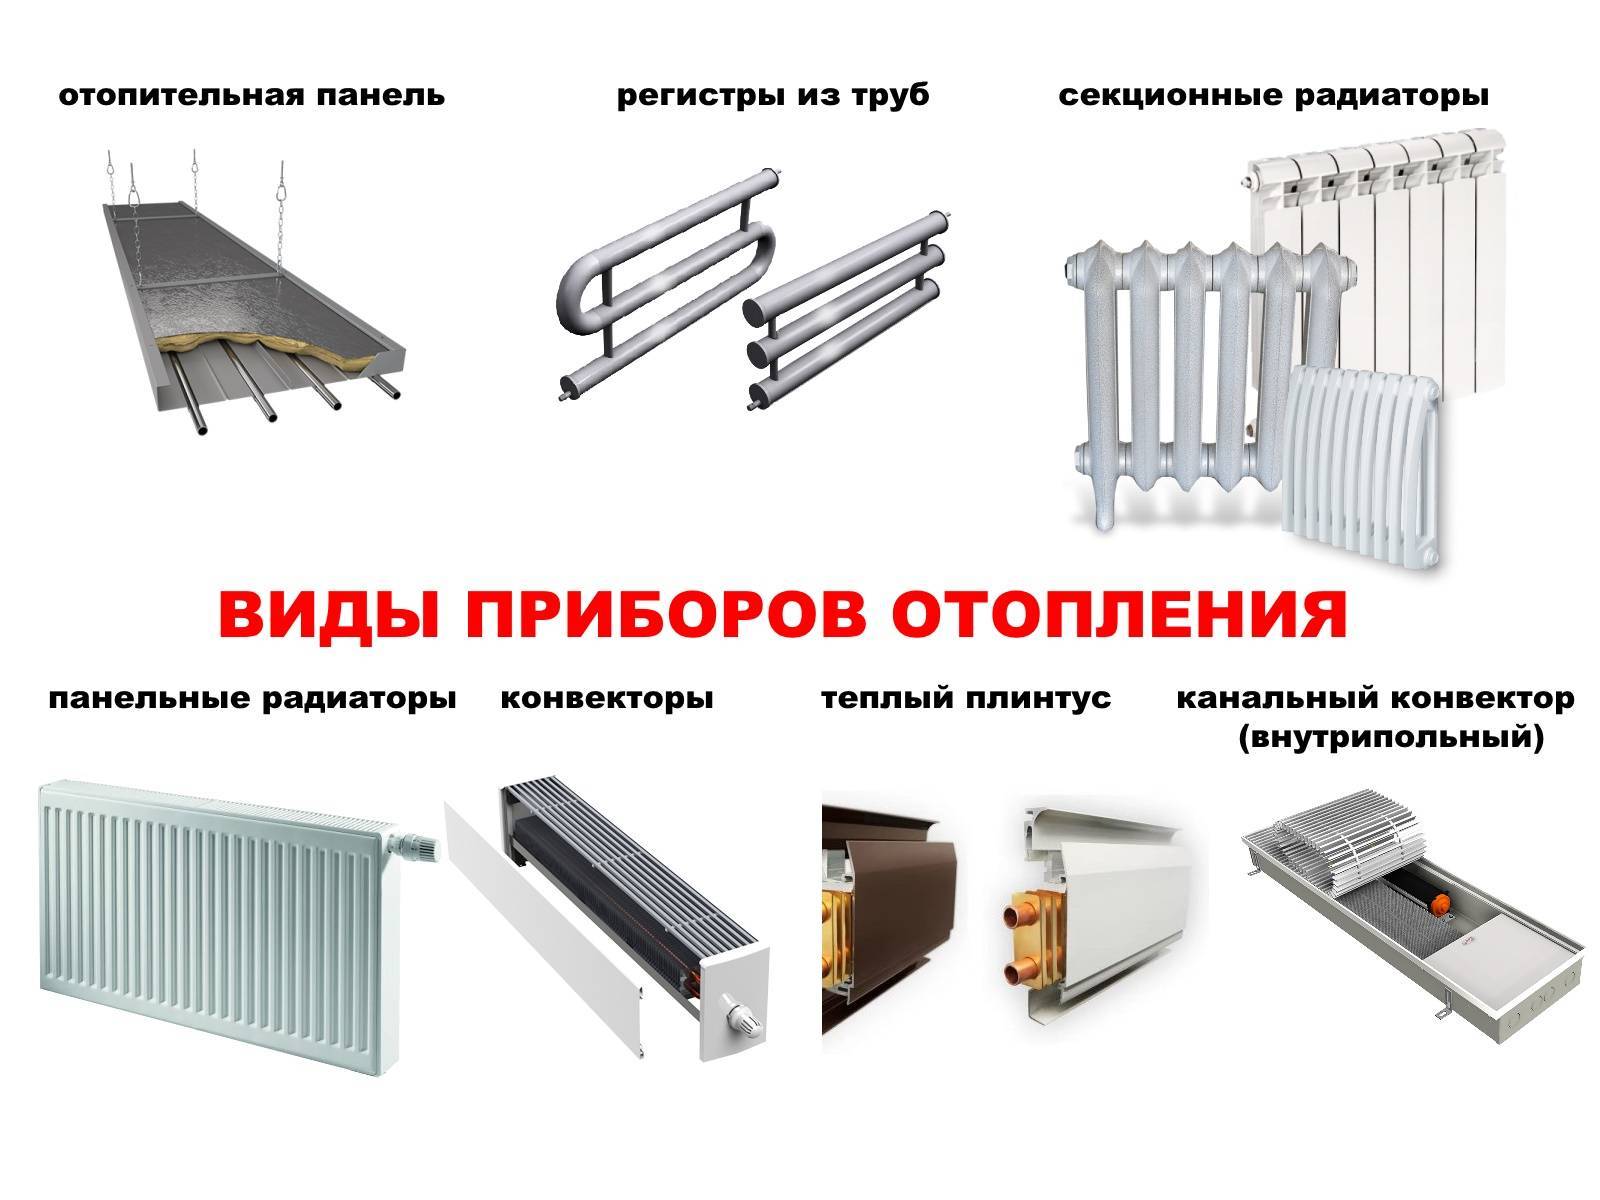 Как выбрать радиатор отопления для квартиры? виды радиаторов отопления и их характеристики :: syl.ru